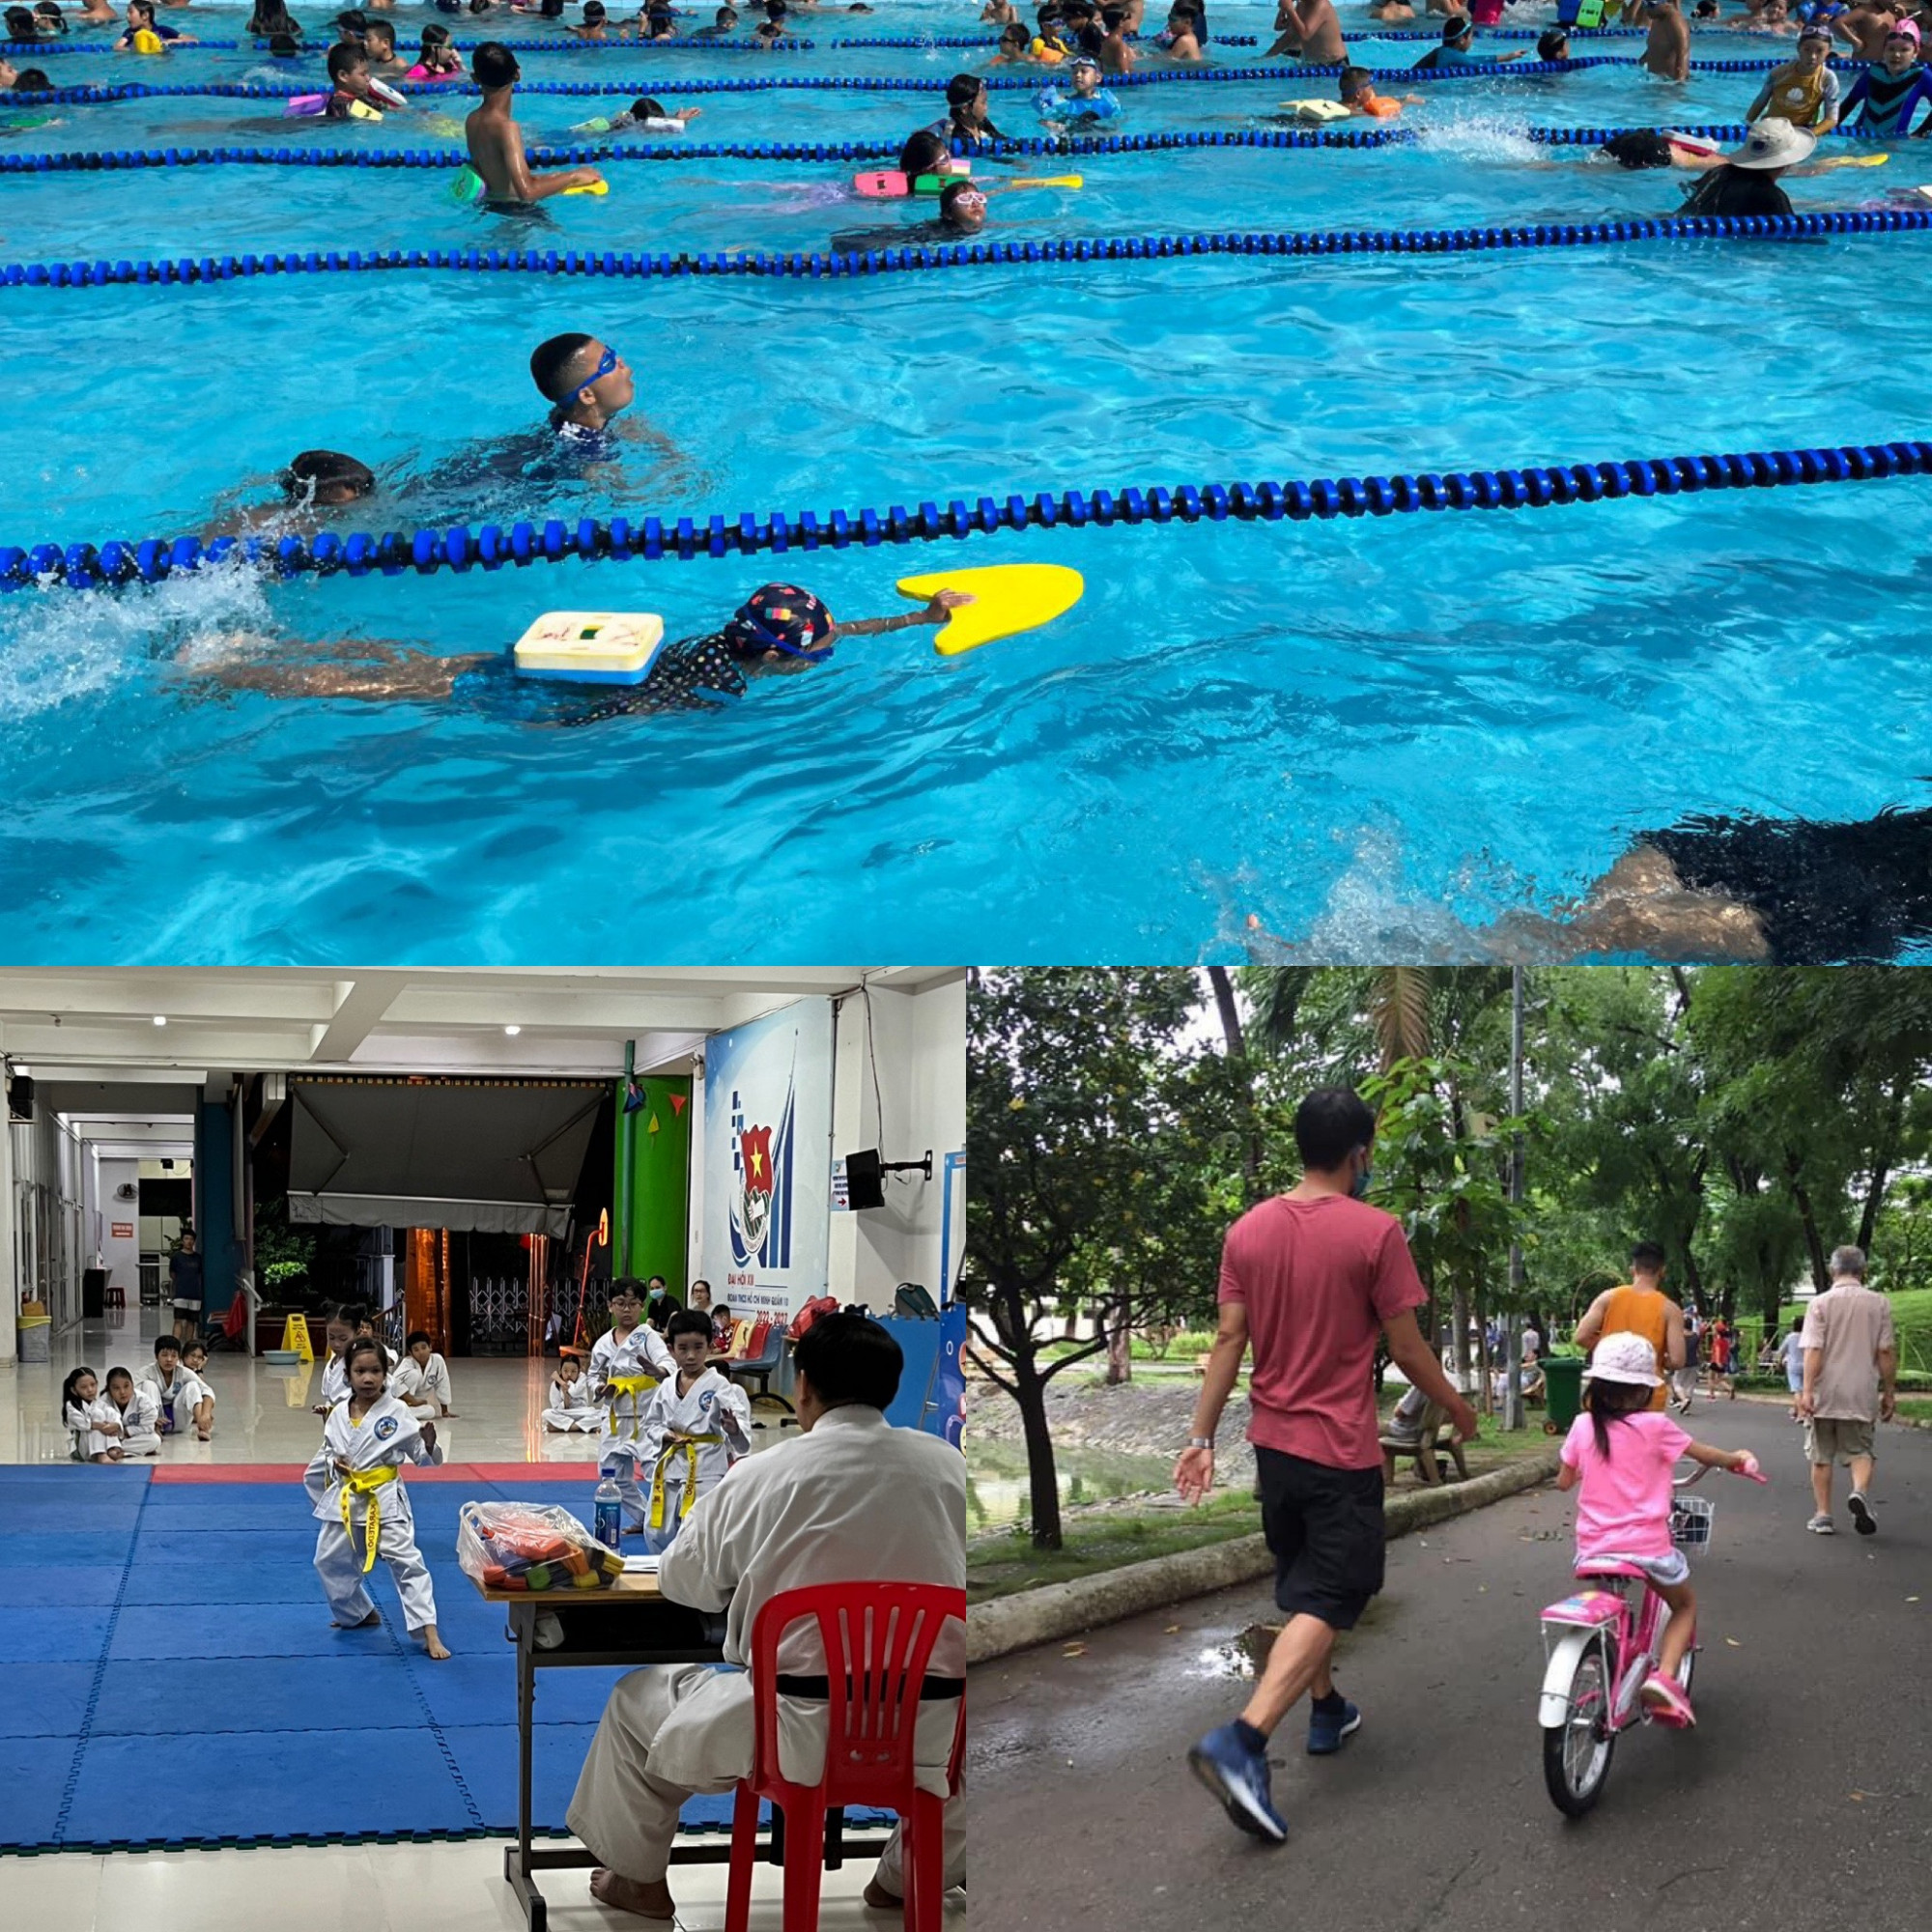 Mùa hè cực sôi động với các hoạt động bơi lội, võ thuật và đạp xe. Ảnh: Nhân vật cung cấp